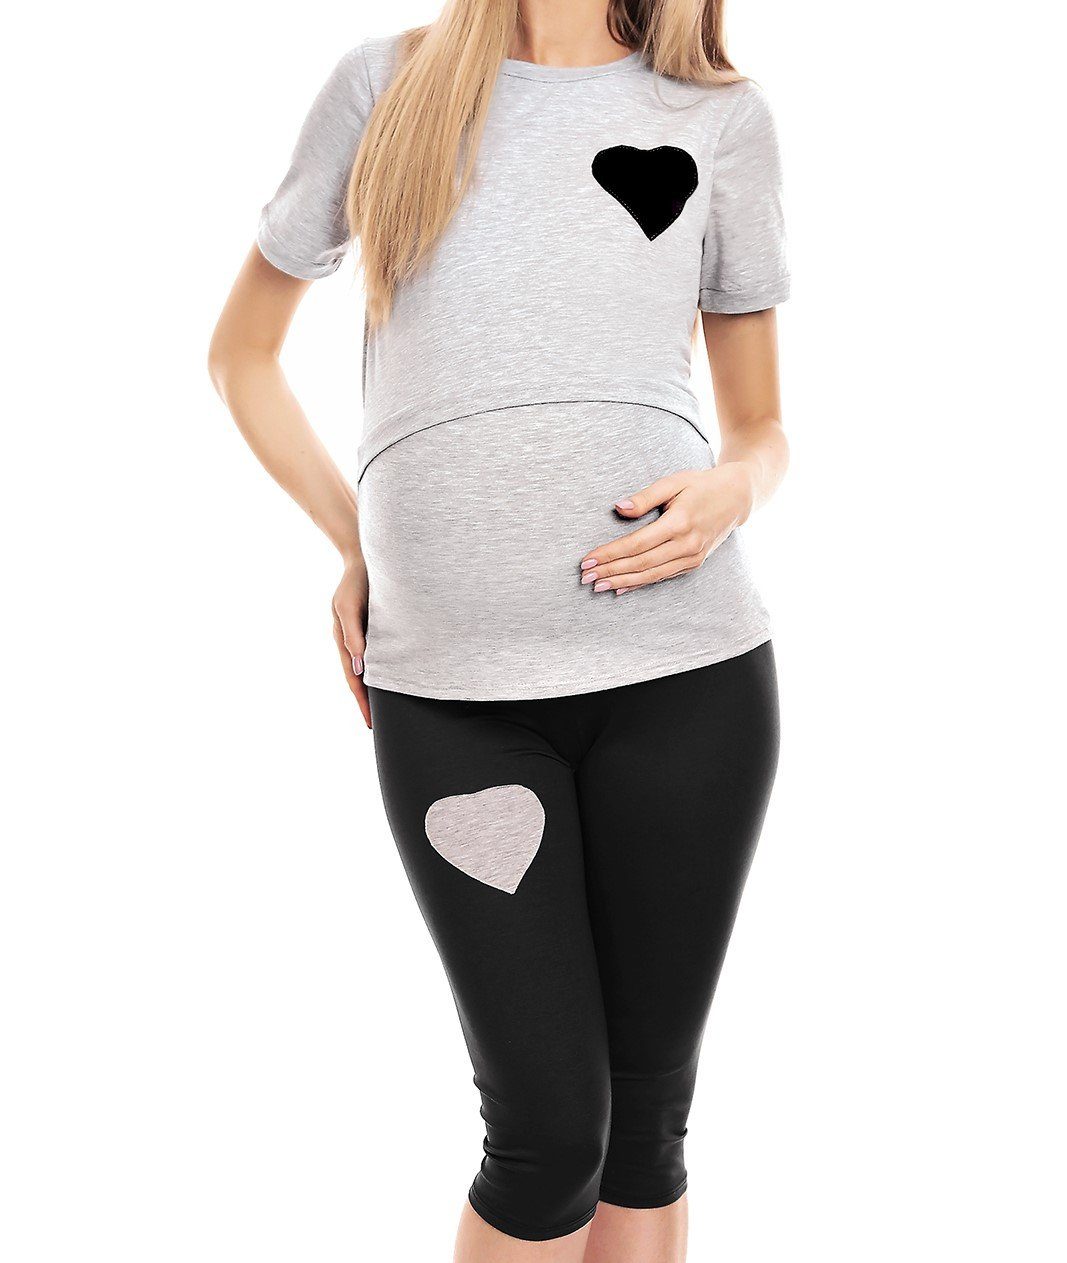 Umstandspyjama Stillen grau/schwarz Stillschlafanzug PeeKaBoo Schlafanzug Schwangerschaft